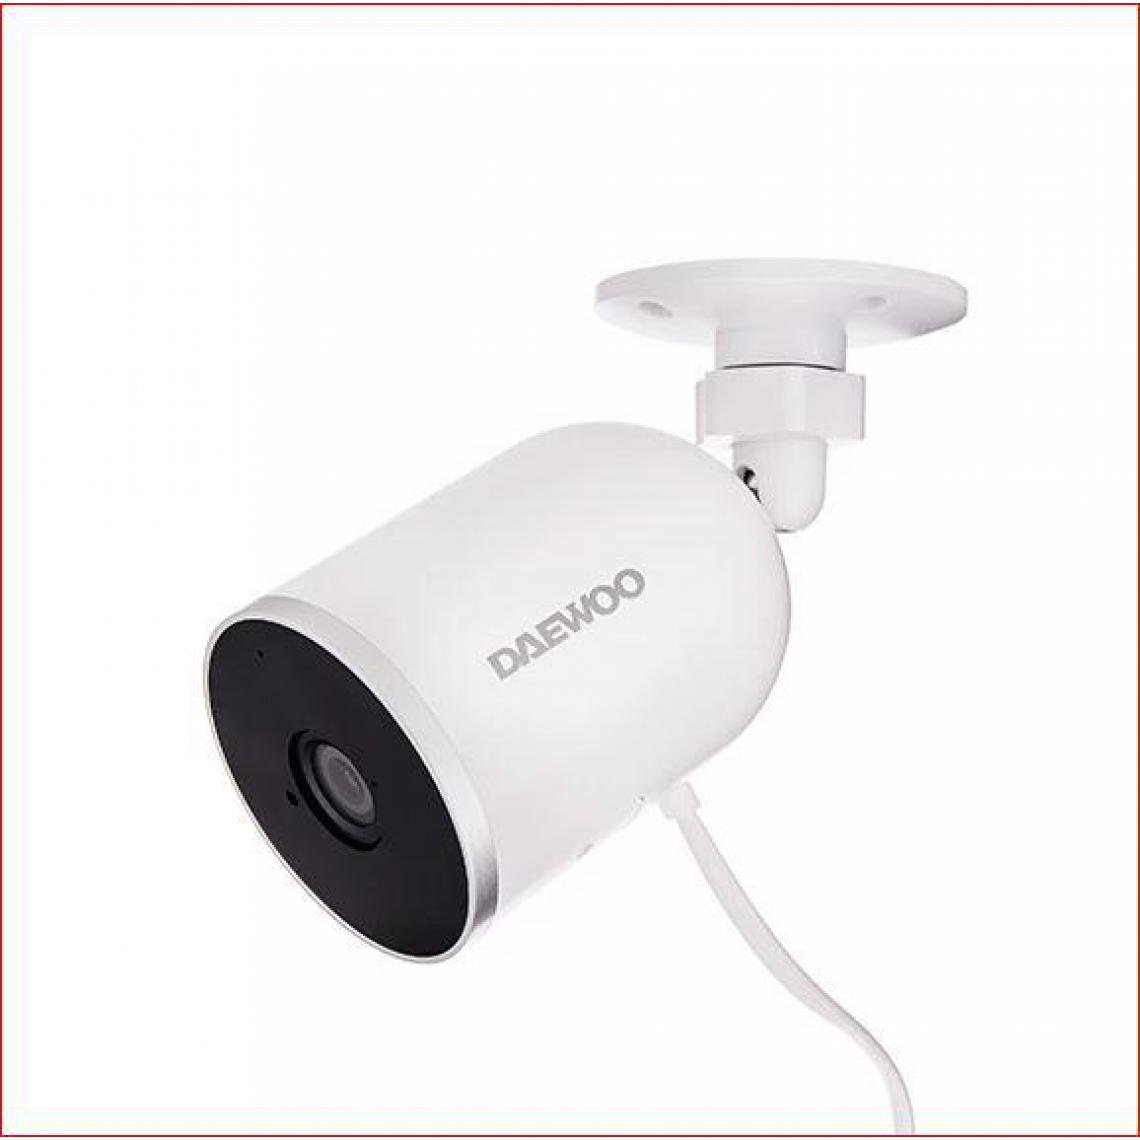 Daewoo - Daewoo Camera EF501 Exterieure Full HD fixe - Caméra de surveillance connectée